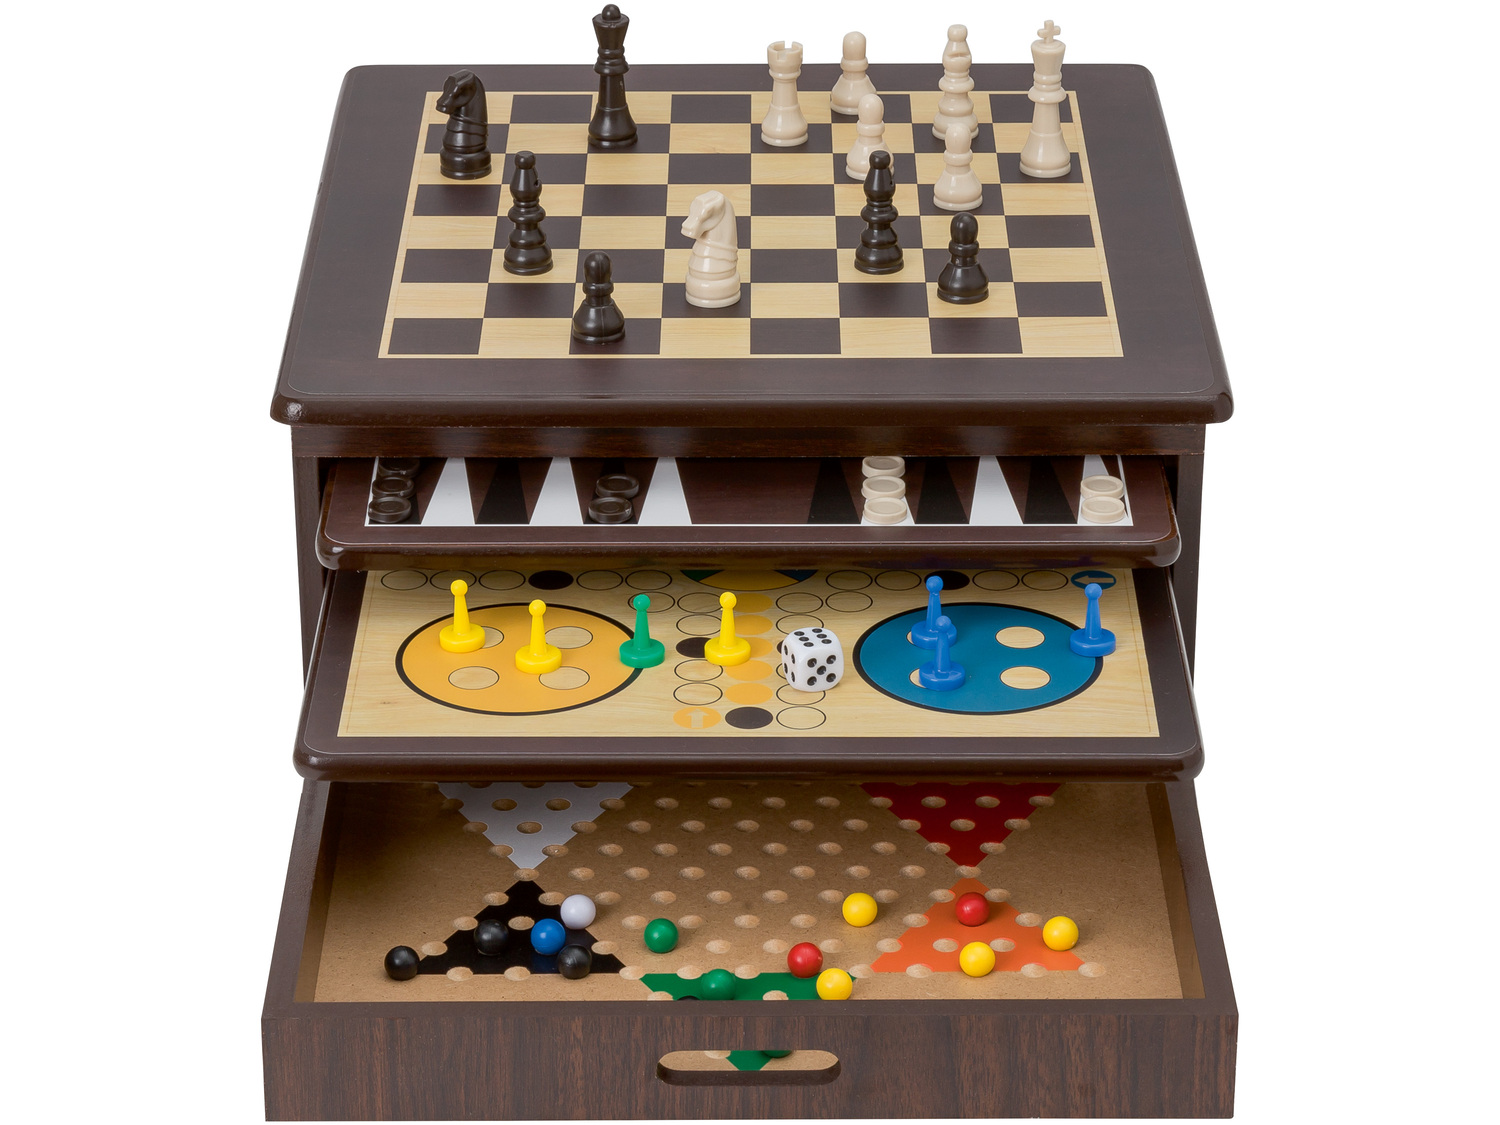 Drewniana kolekcja gier 10 w 1 Playtive, cena 89,90 PLN 
- w zestawie: szachy, warcaby, ...